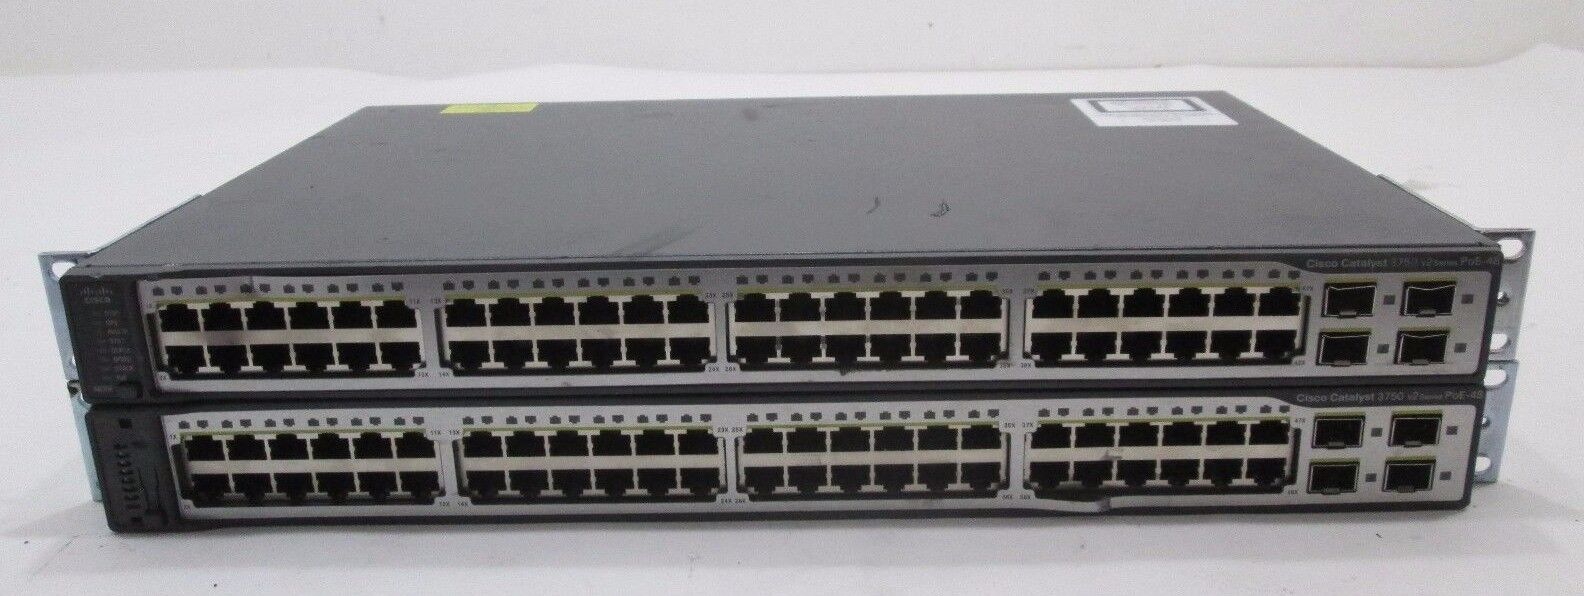 Lot of (2) Cisco WS-C3750V2-48PS-E 48 Port PoE Ethernet Switch 10/100 + SFP